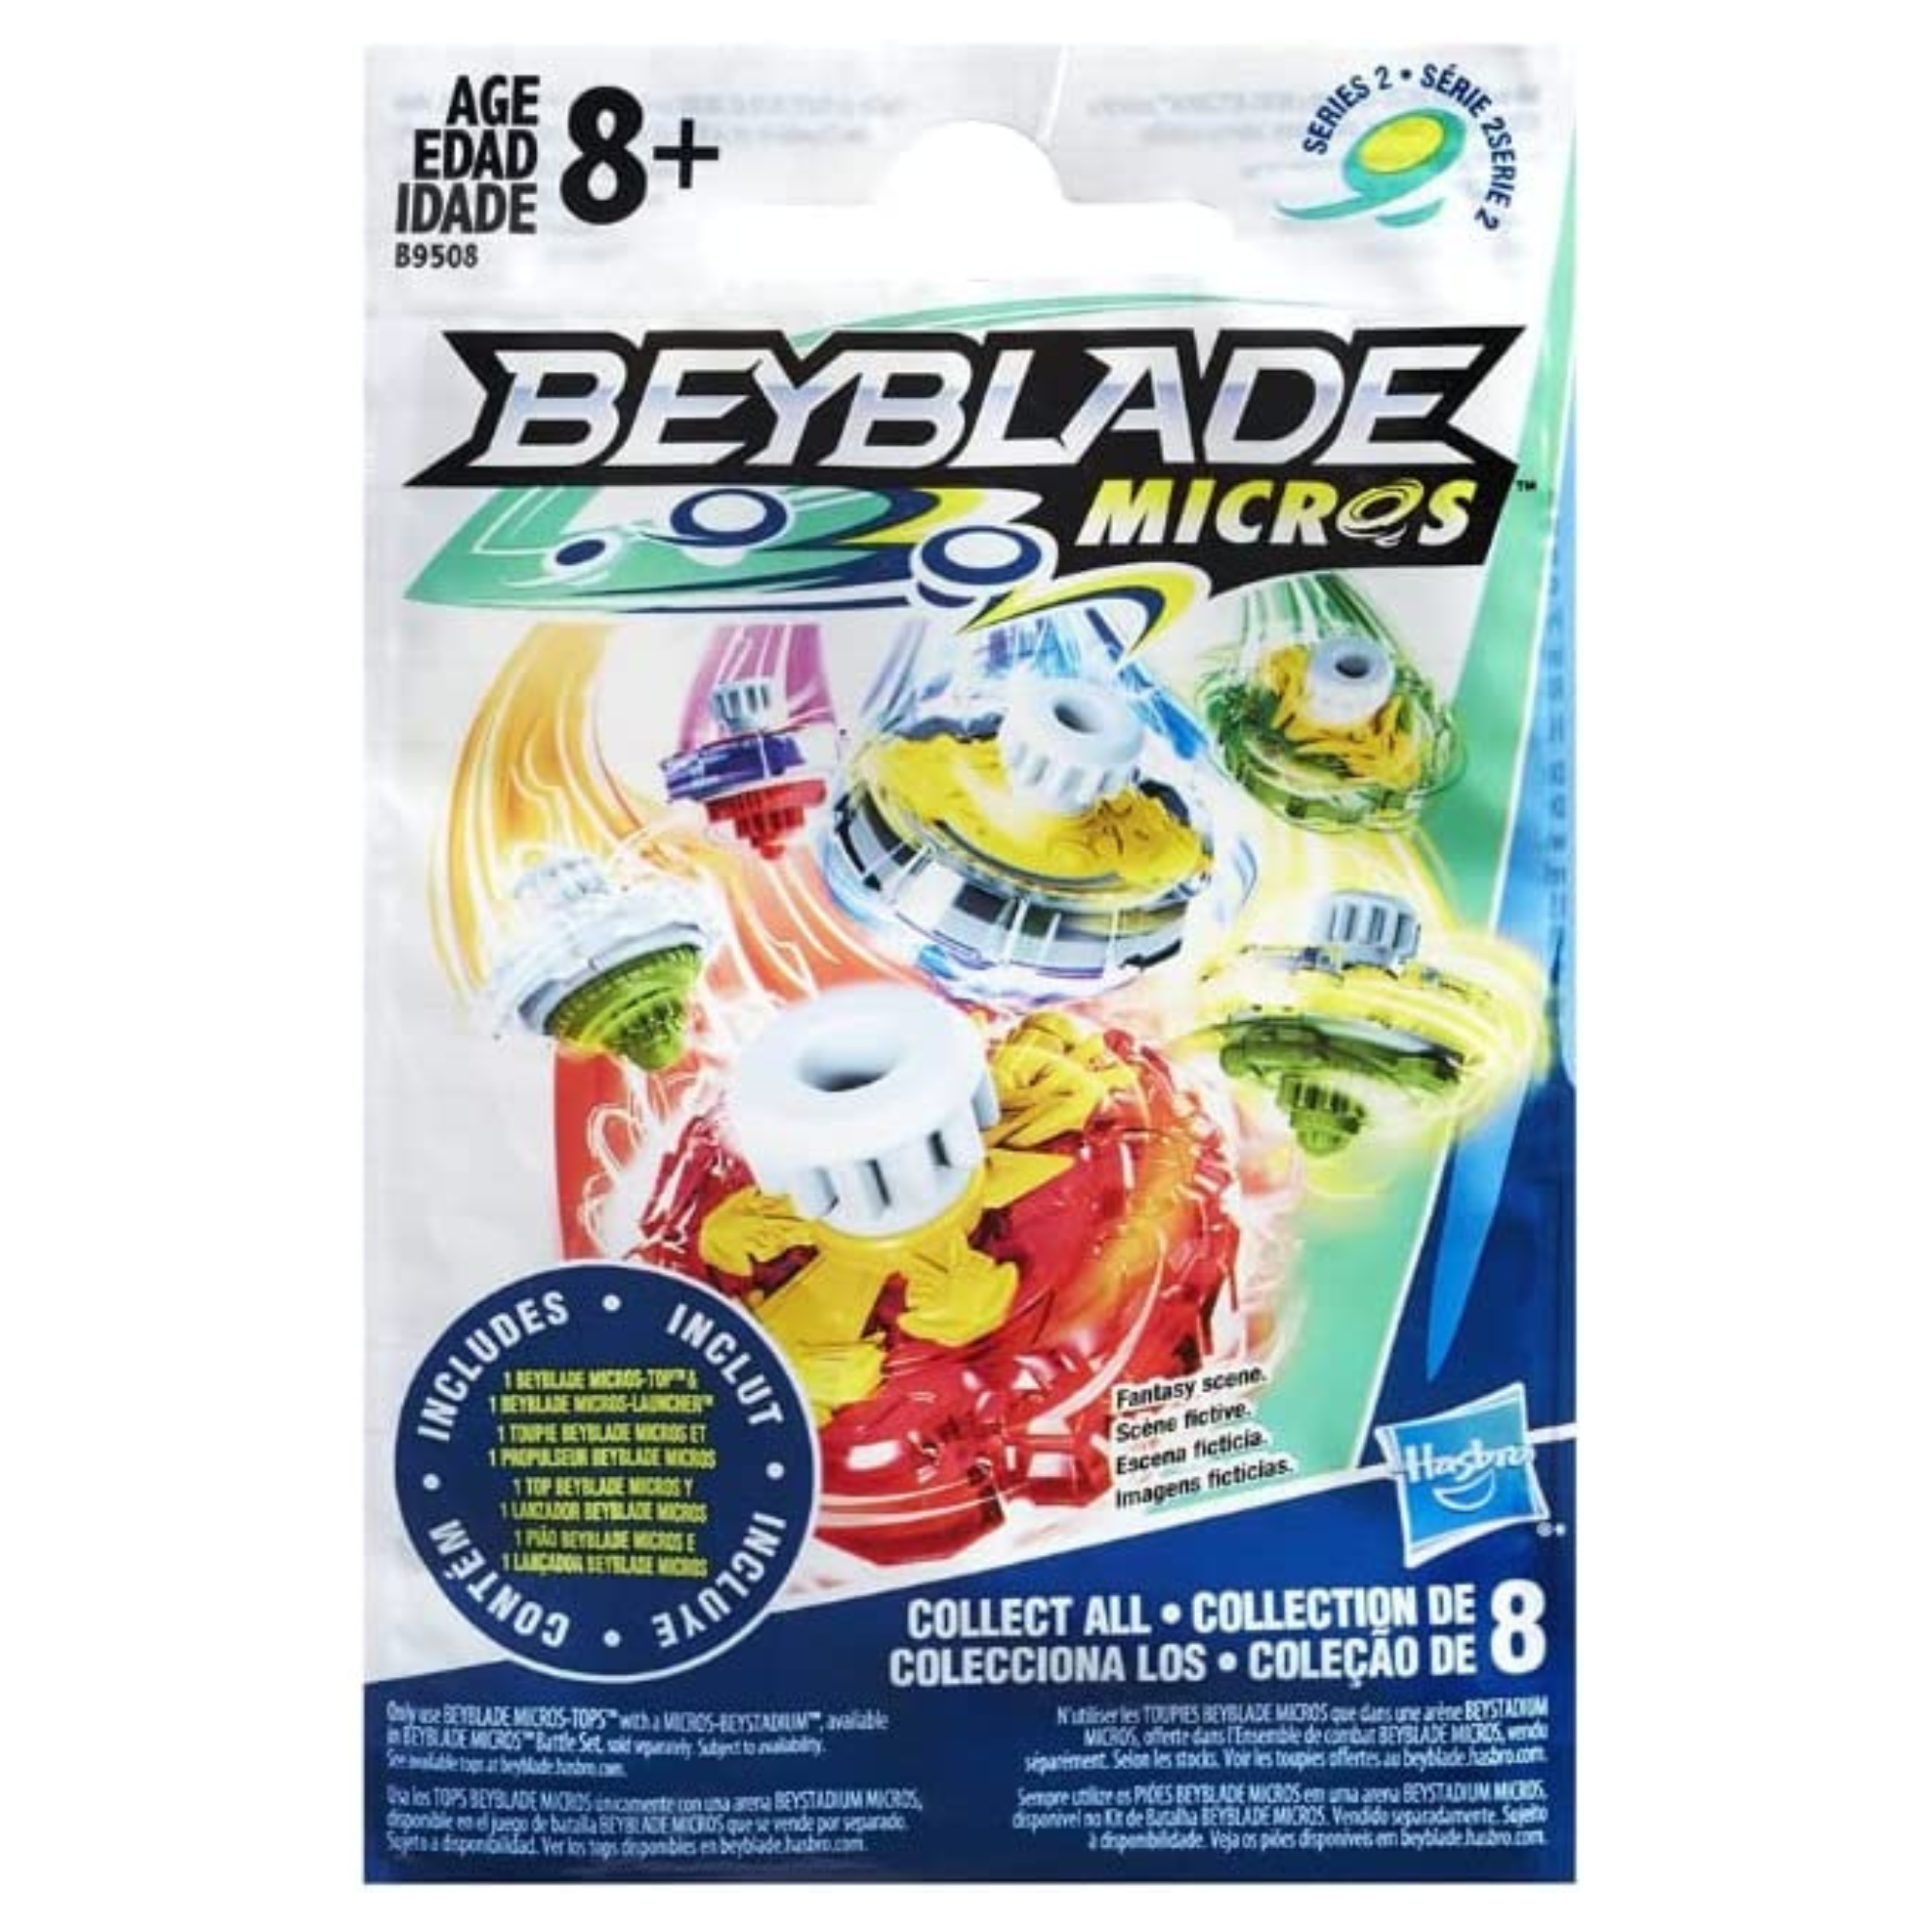 Beyblade Micros Series 2 Battling Top Spinners Blind Bag - Twin Pack